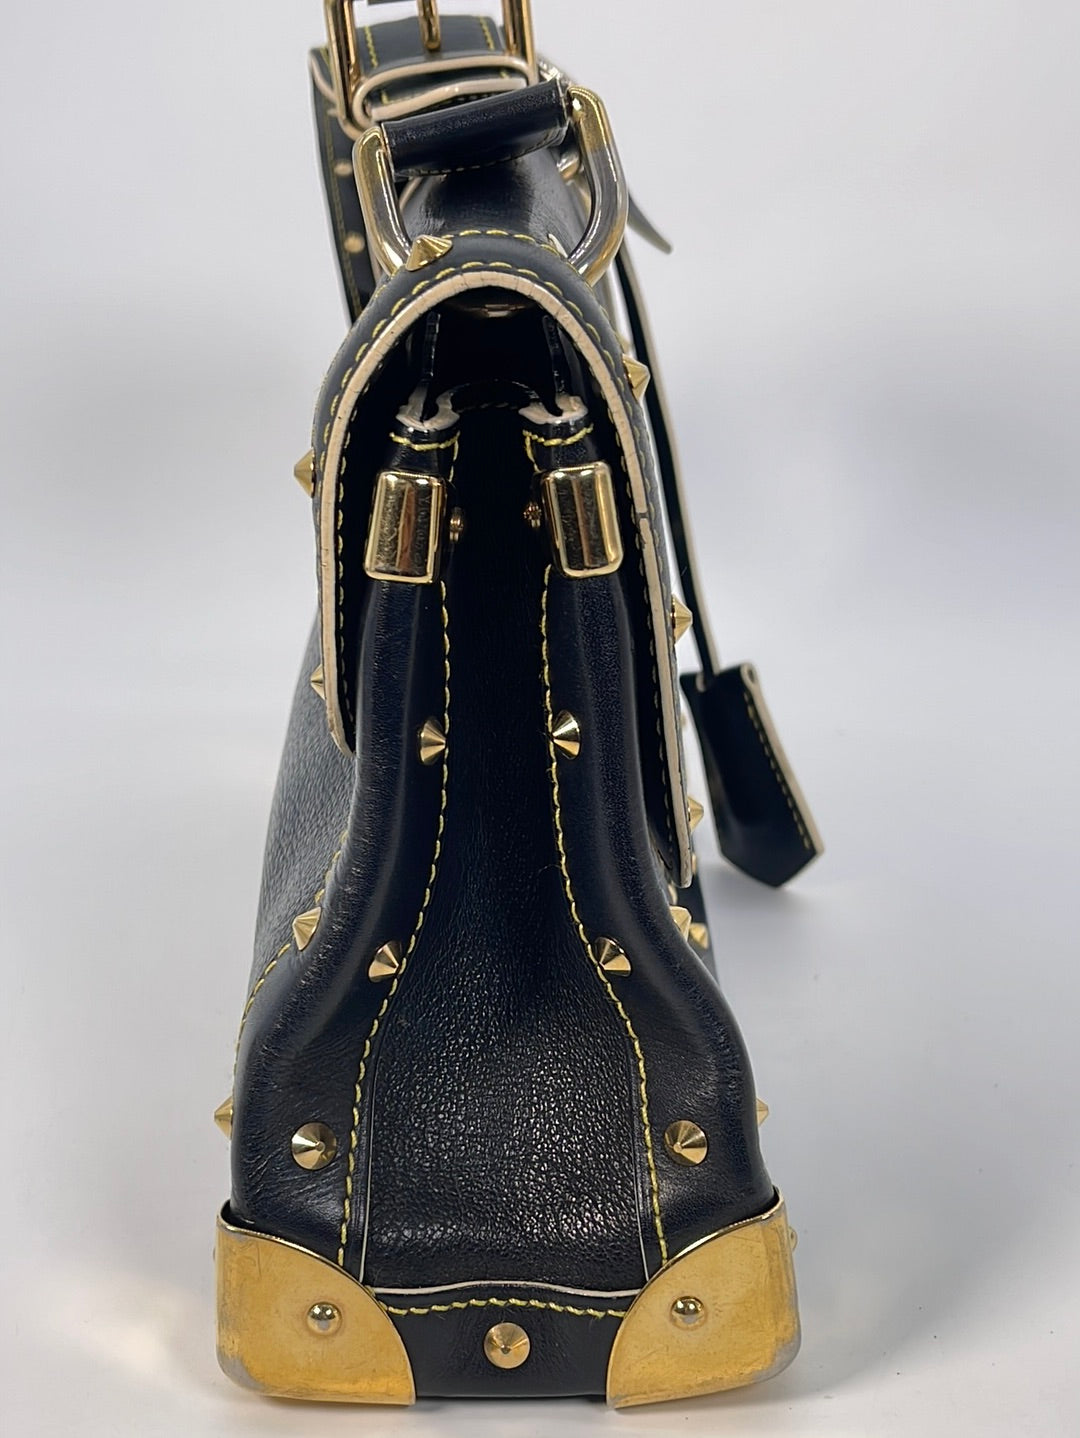 Louis Vuitton Suhali L'Impetueux Handbag Leather - ShopStyle Shoulder Bags